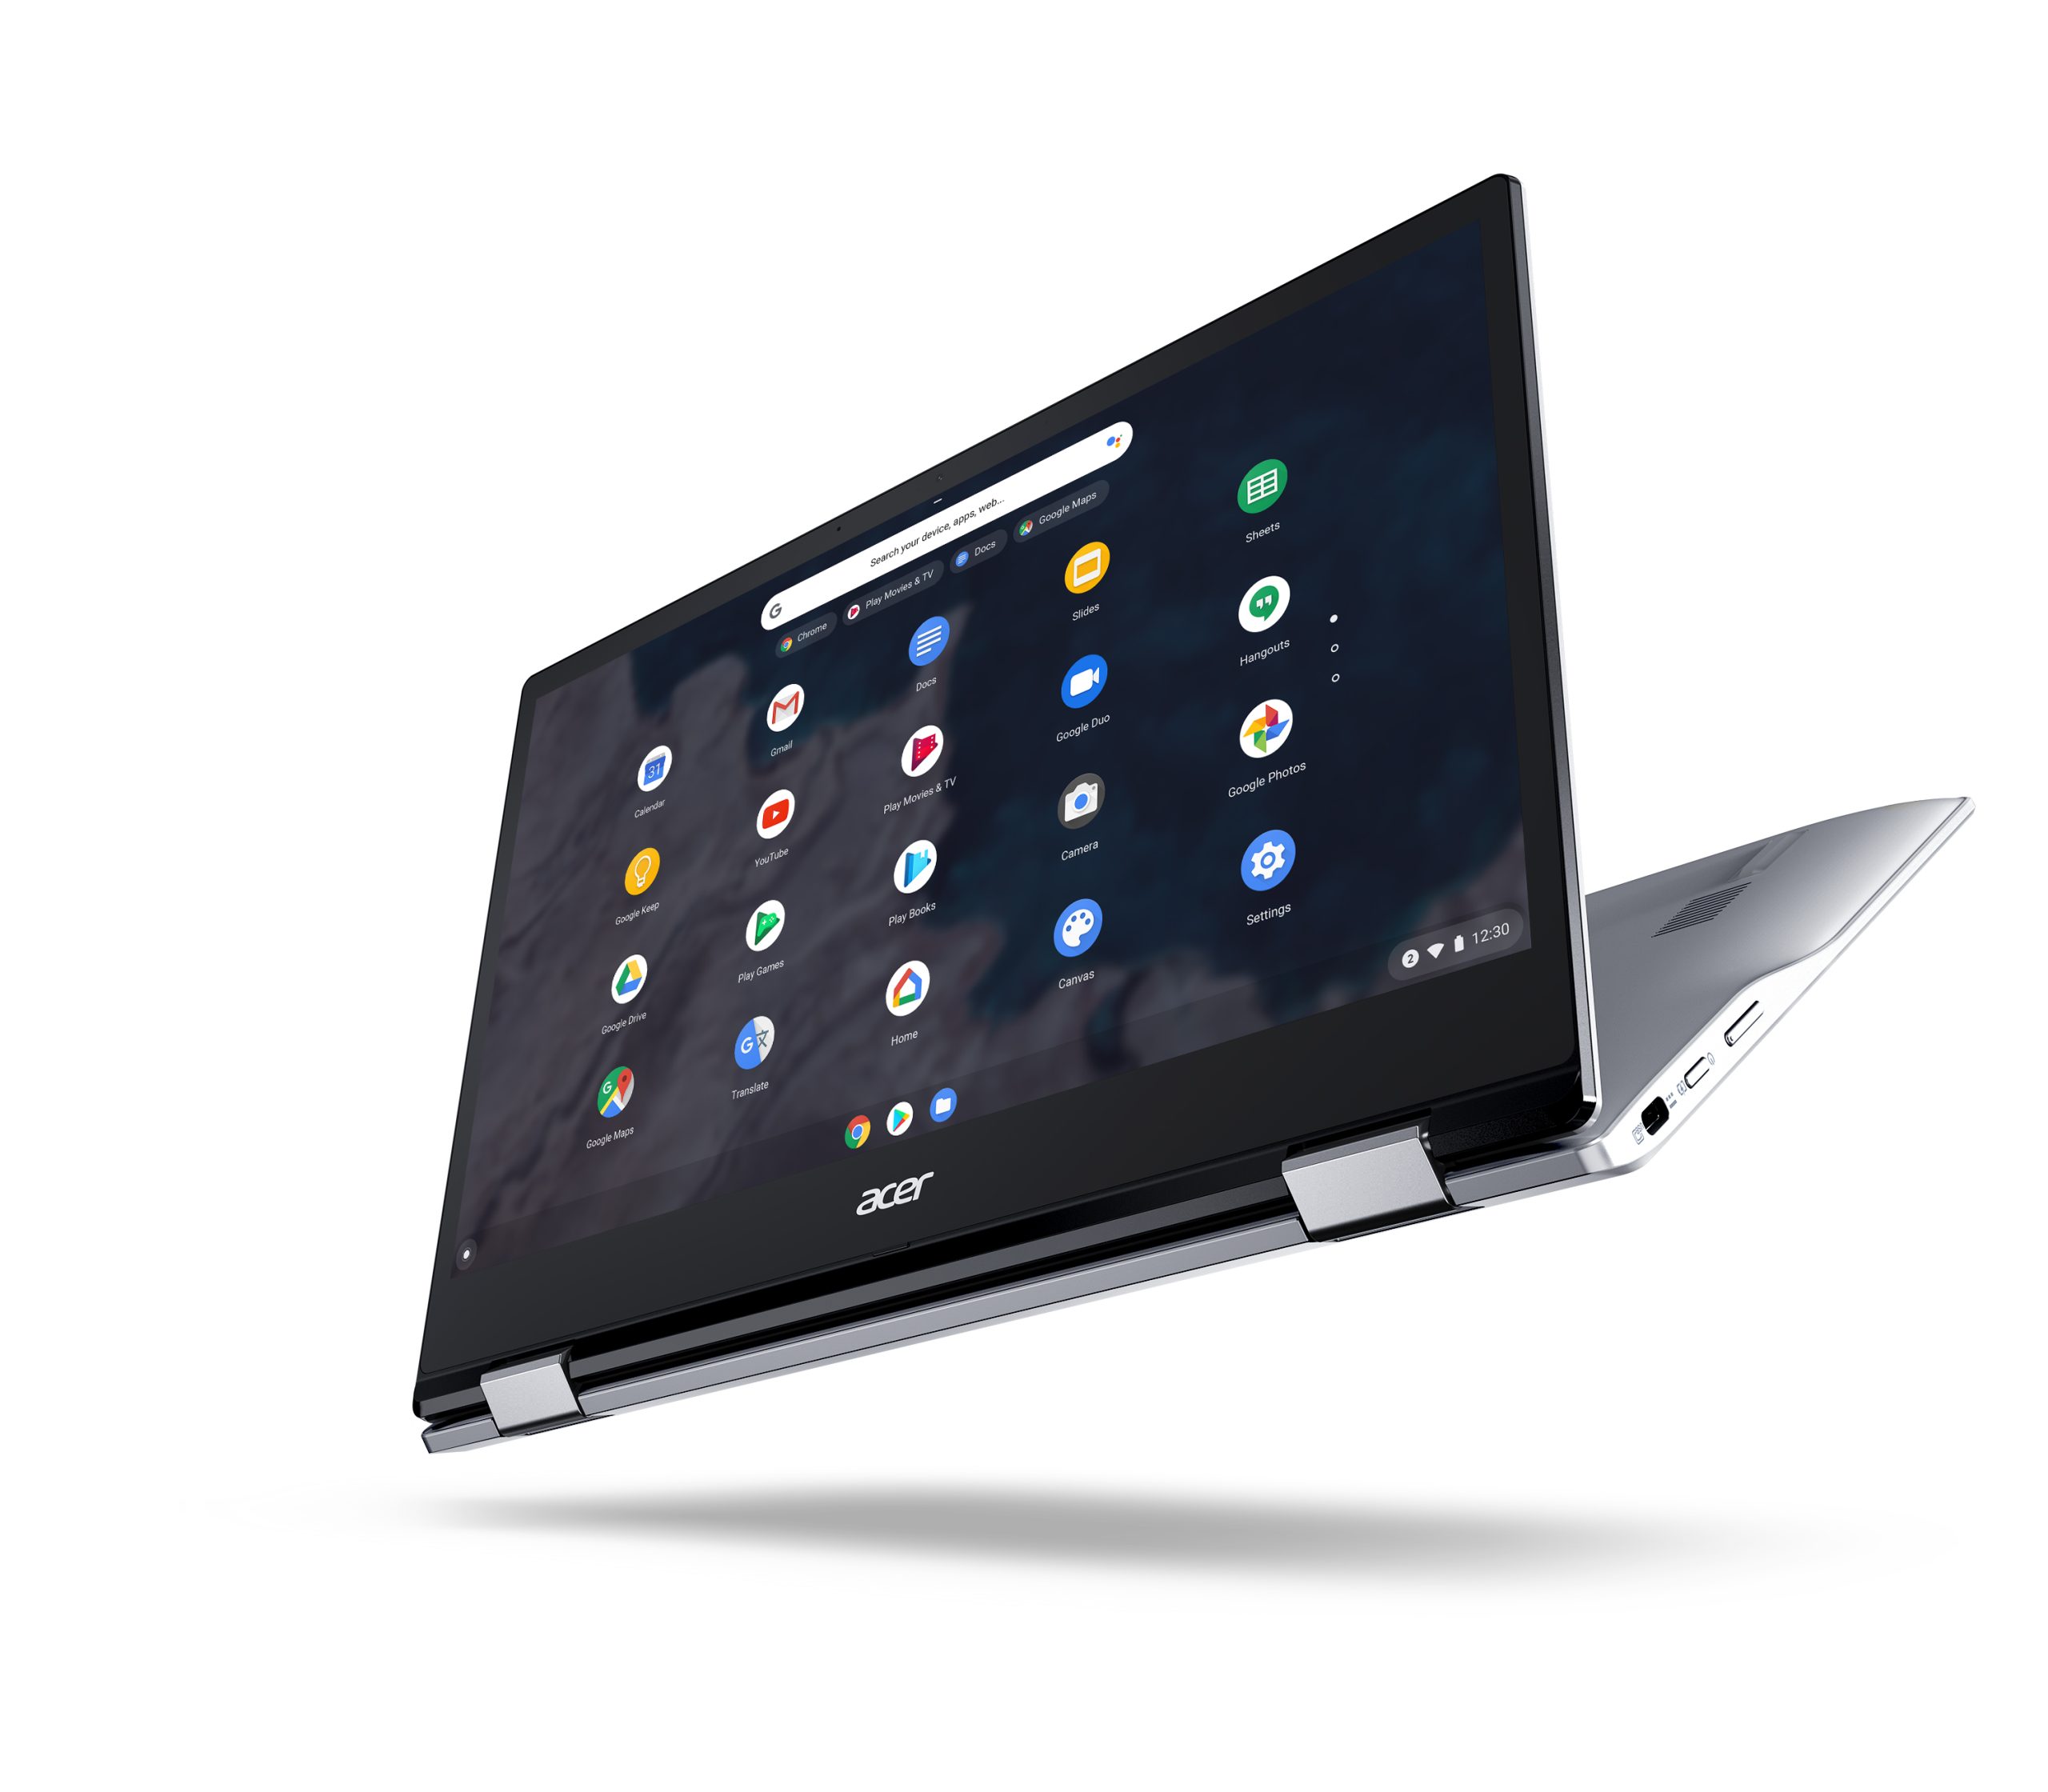 Acer İki Yeni Chromebook Modelini Satışa Sundu